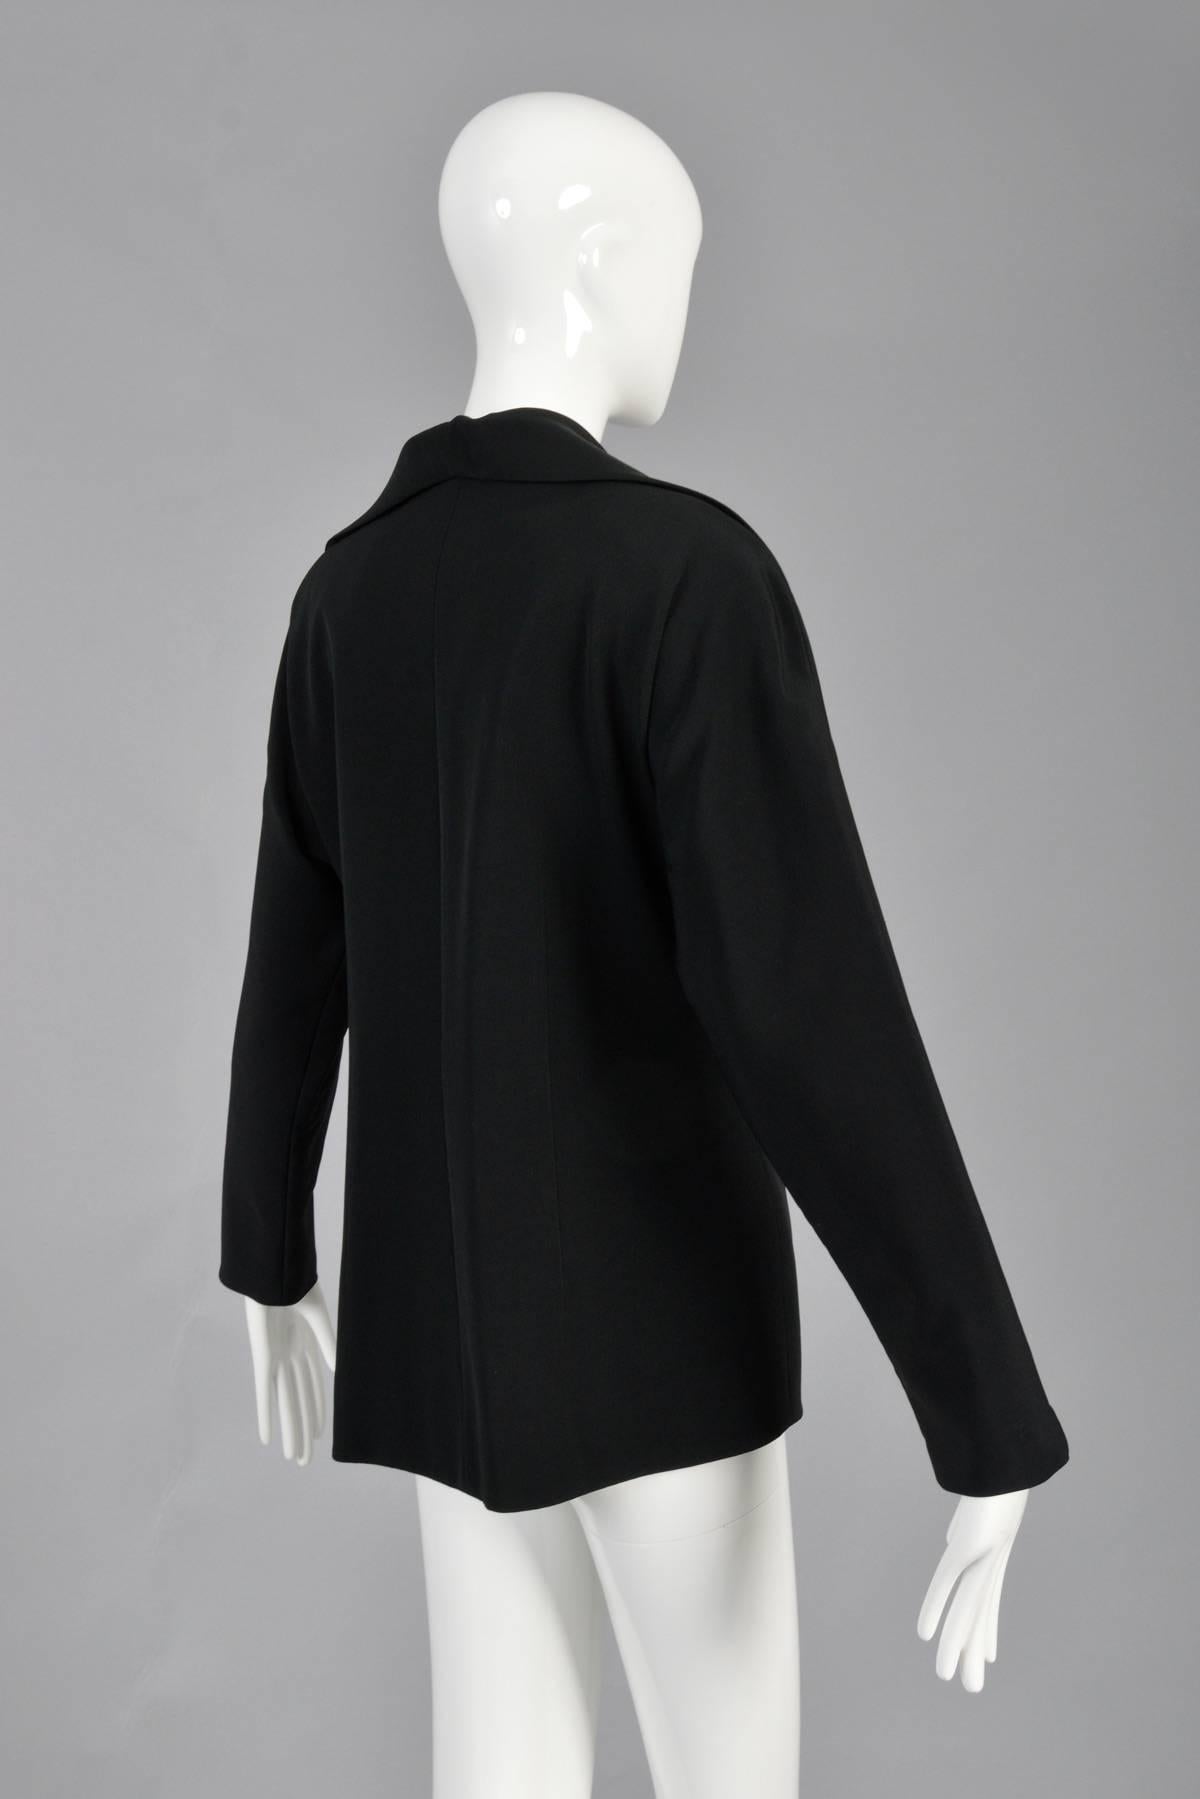 Naeem Khan Beaded Schiaparelli Inspired Jacket For Sale 3